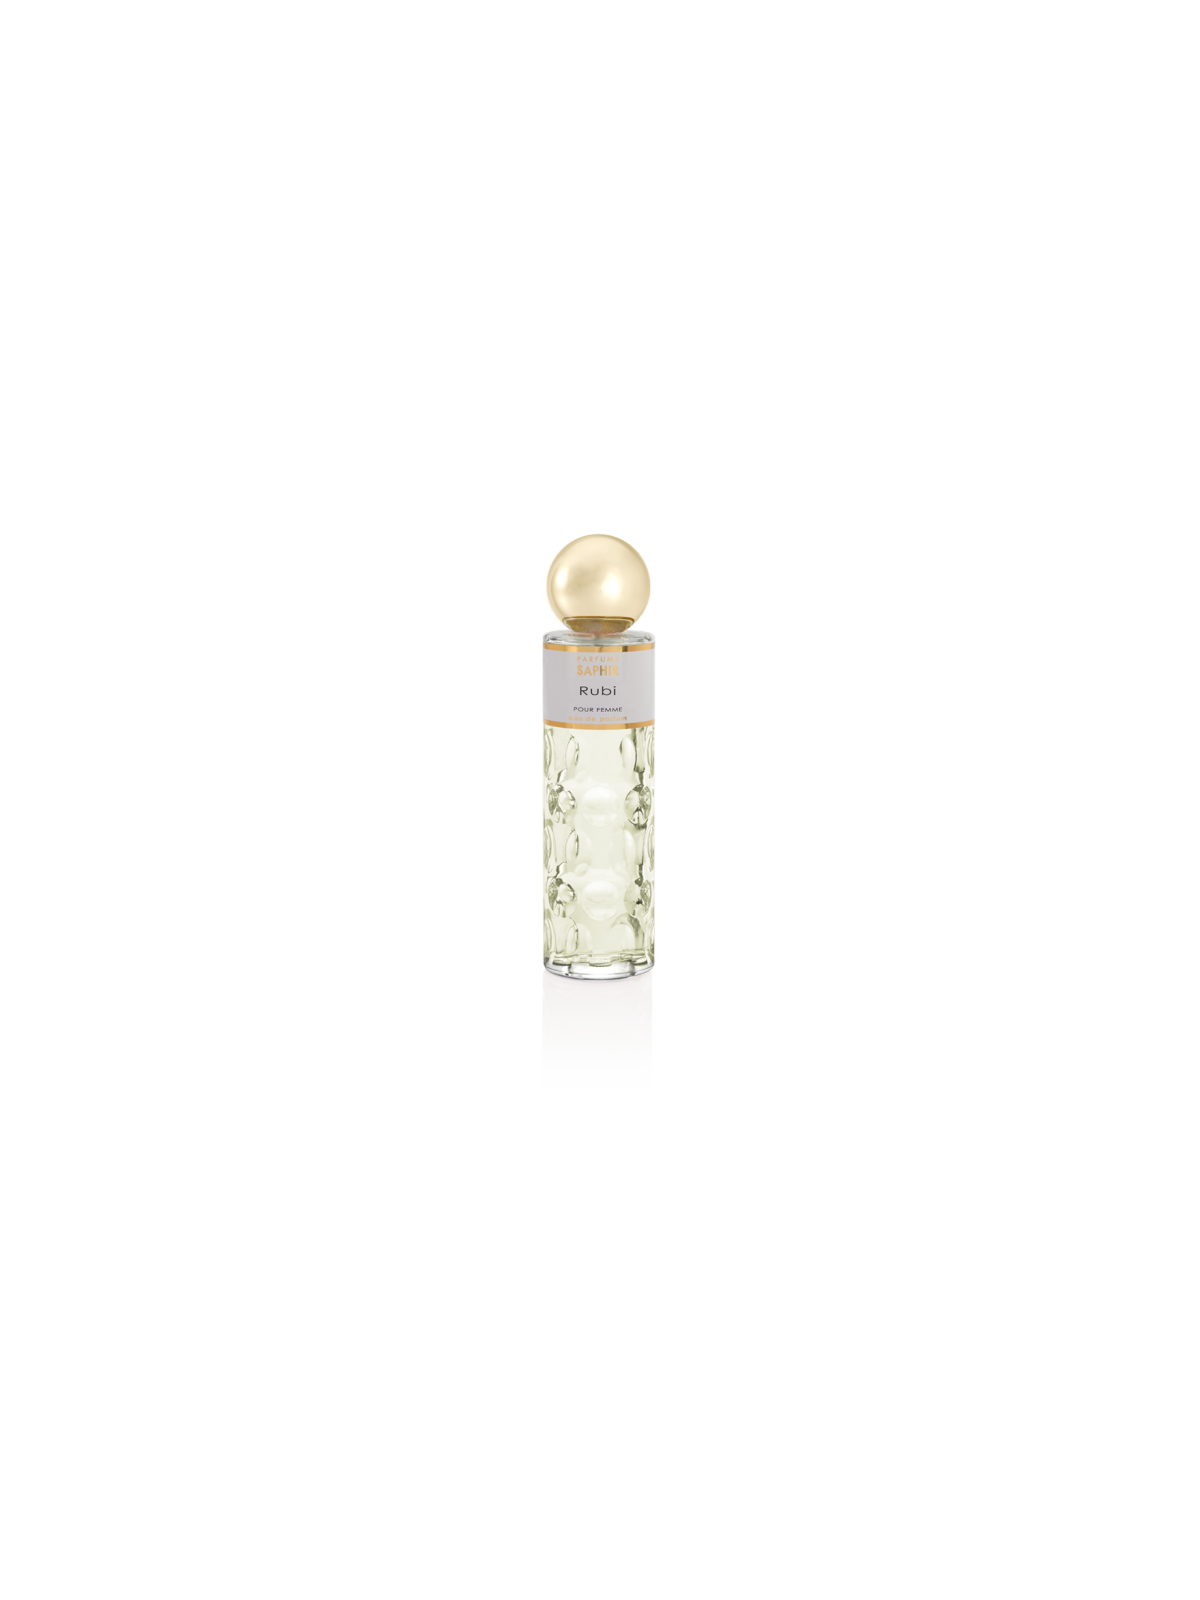 Comprar Perfume SAPHIR Rubi 200ml. en Perfumes para mujer por sólo 12,90 € o un precio específico de 12,90 € en Thalie Care